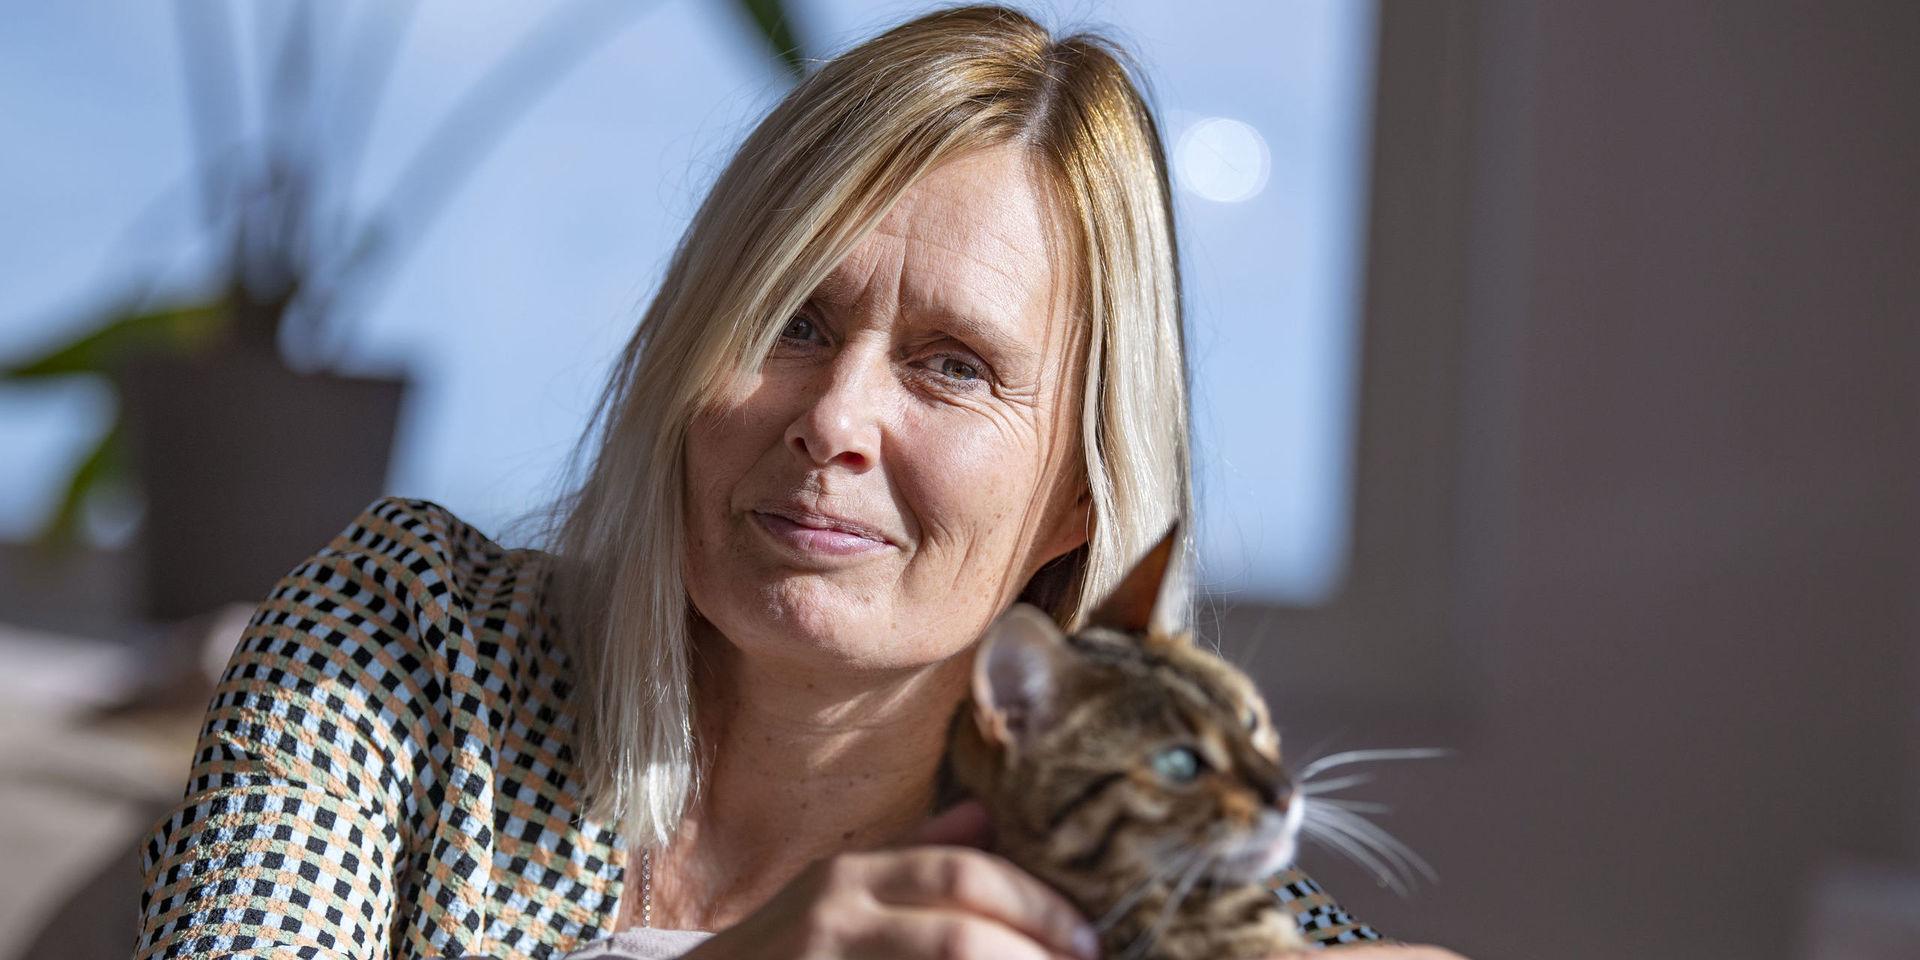 Ulrika Rogland, här tillsammans med katten Bonnie, har varit domare och en av landets mest profilerade åklagare inom sexualbrott. I dag arbetar hon som advokat och målsägandebiträde och är specialiserad på brott mot barn. Nu fyller hon 55 år.